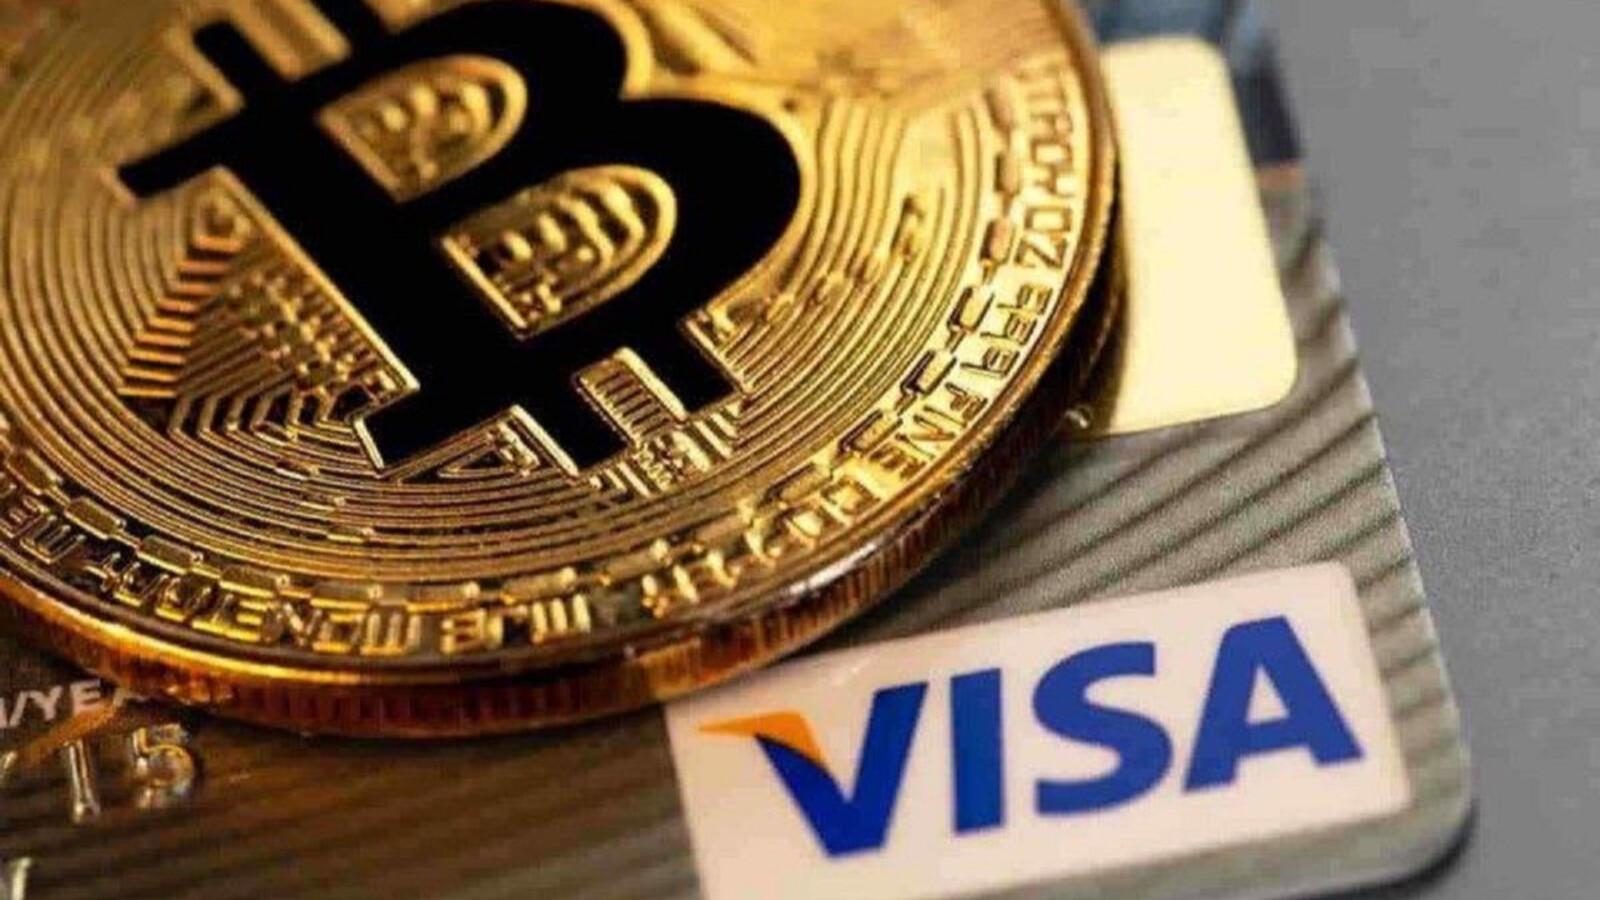 visa-bazi-ulkelerde-bitcoin-ve-kripto-kartlarini-piyasaya-surmeye-hazirlaniyor.jpg